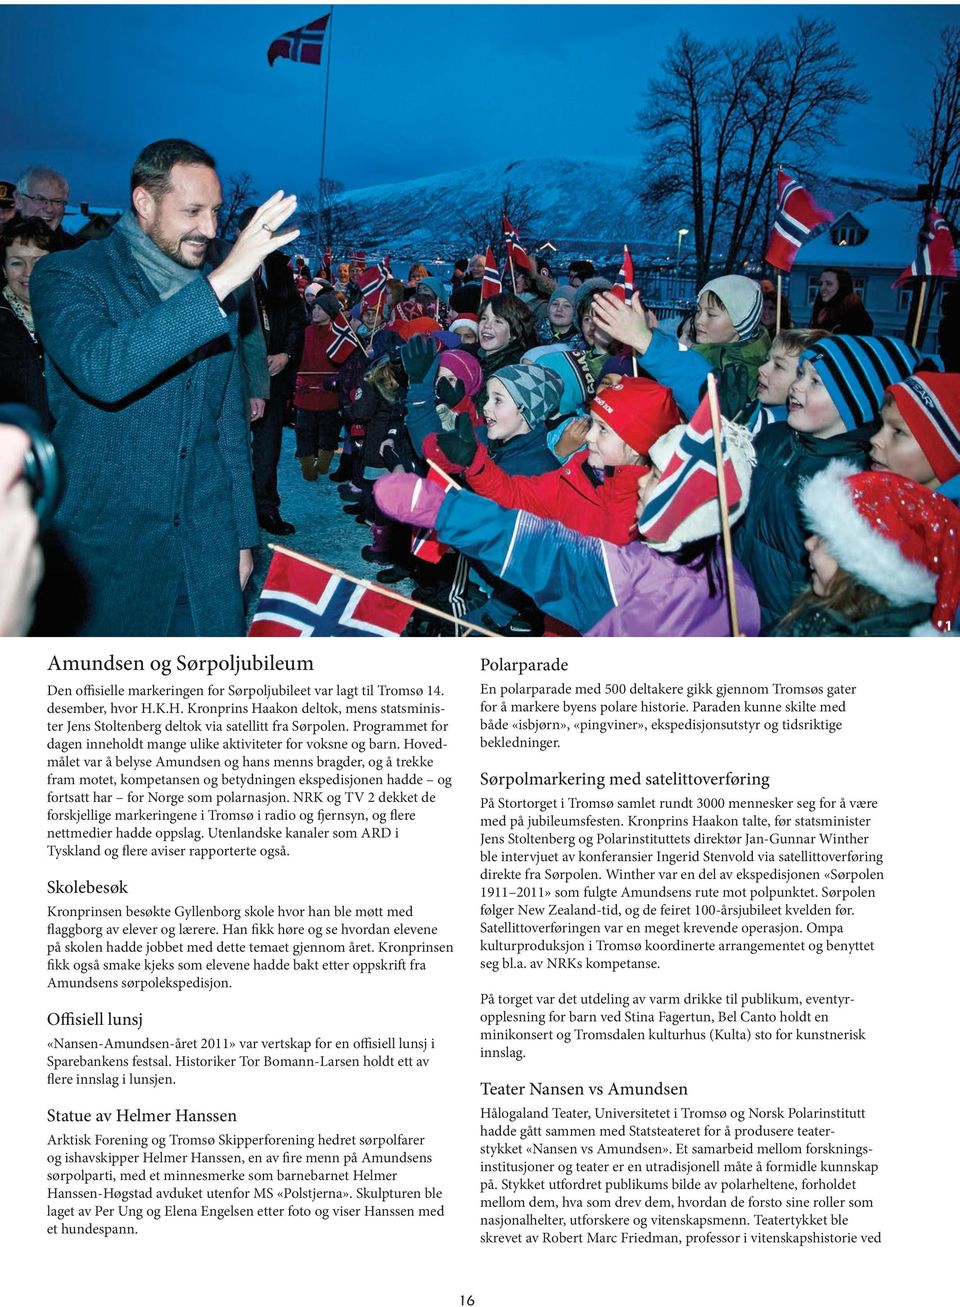 Hovedmålet var å belyse Amundsen og hans menns bragder, og å trekke fram motet, kompetansen og betydningen ekspedisjonen hadde og fortsatt har for Norge som polarnasjon.